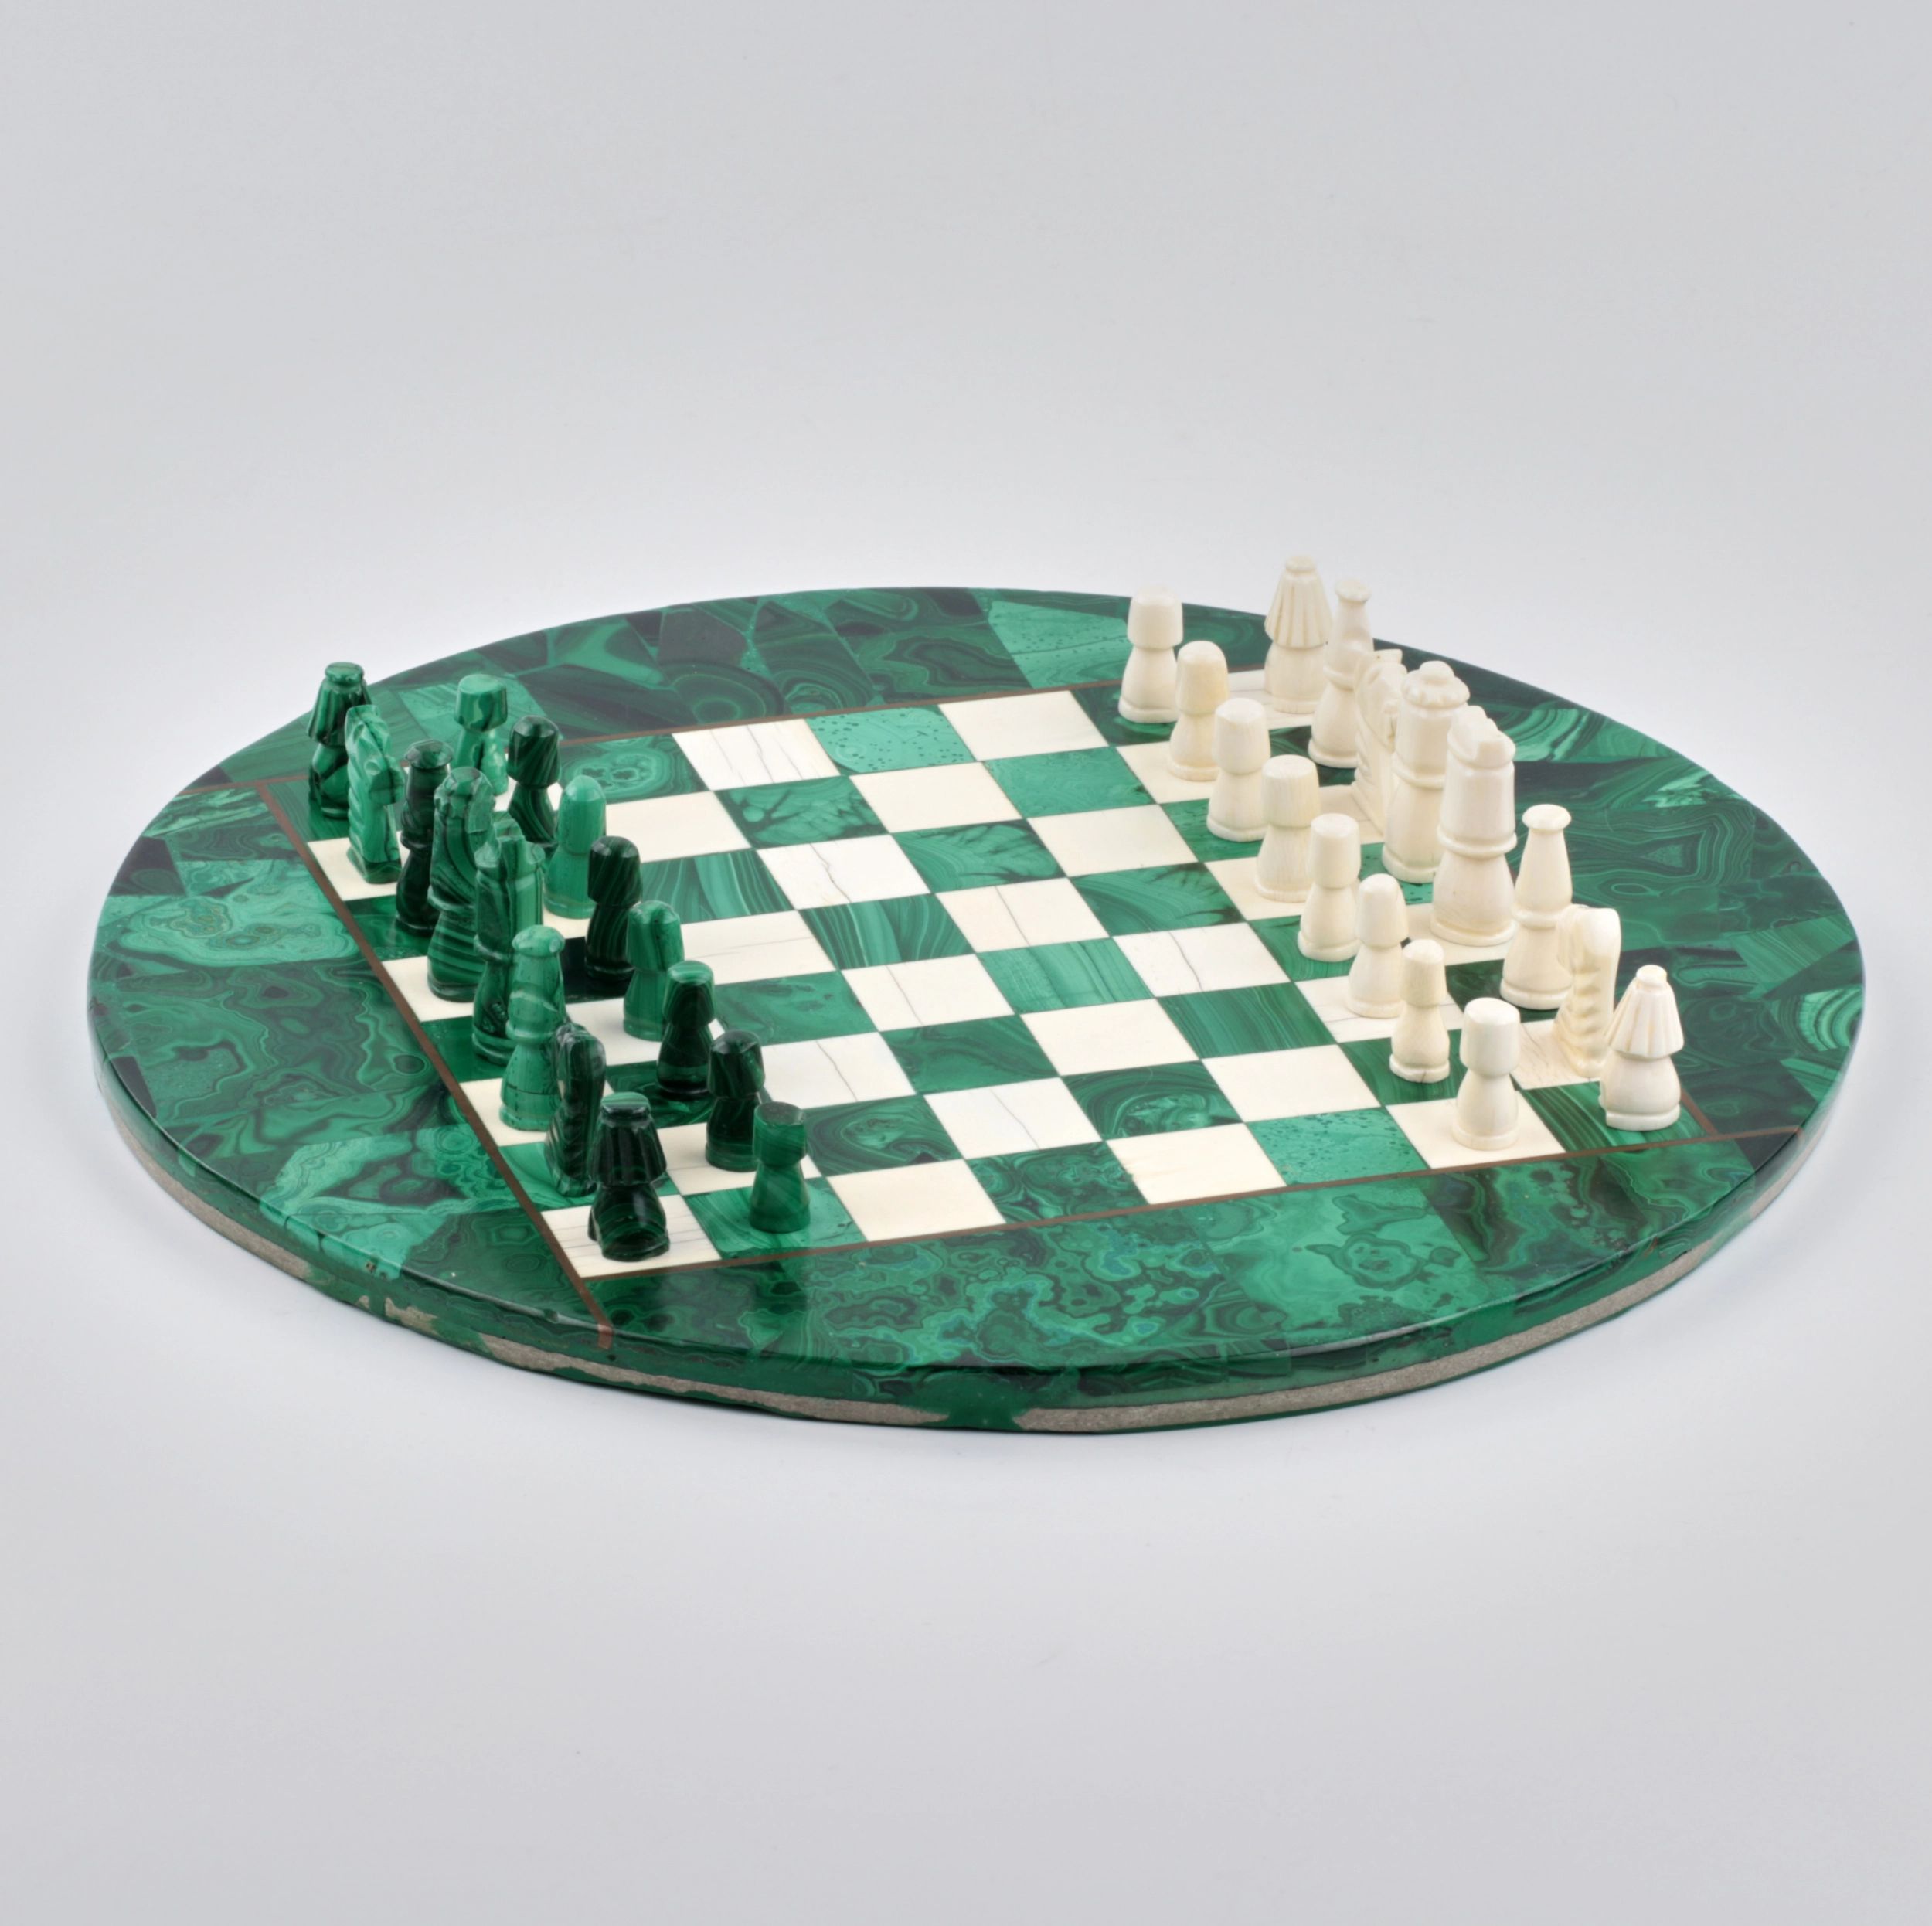 Malachite chess on a round playing board - Antiqon Marketplace